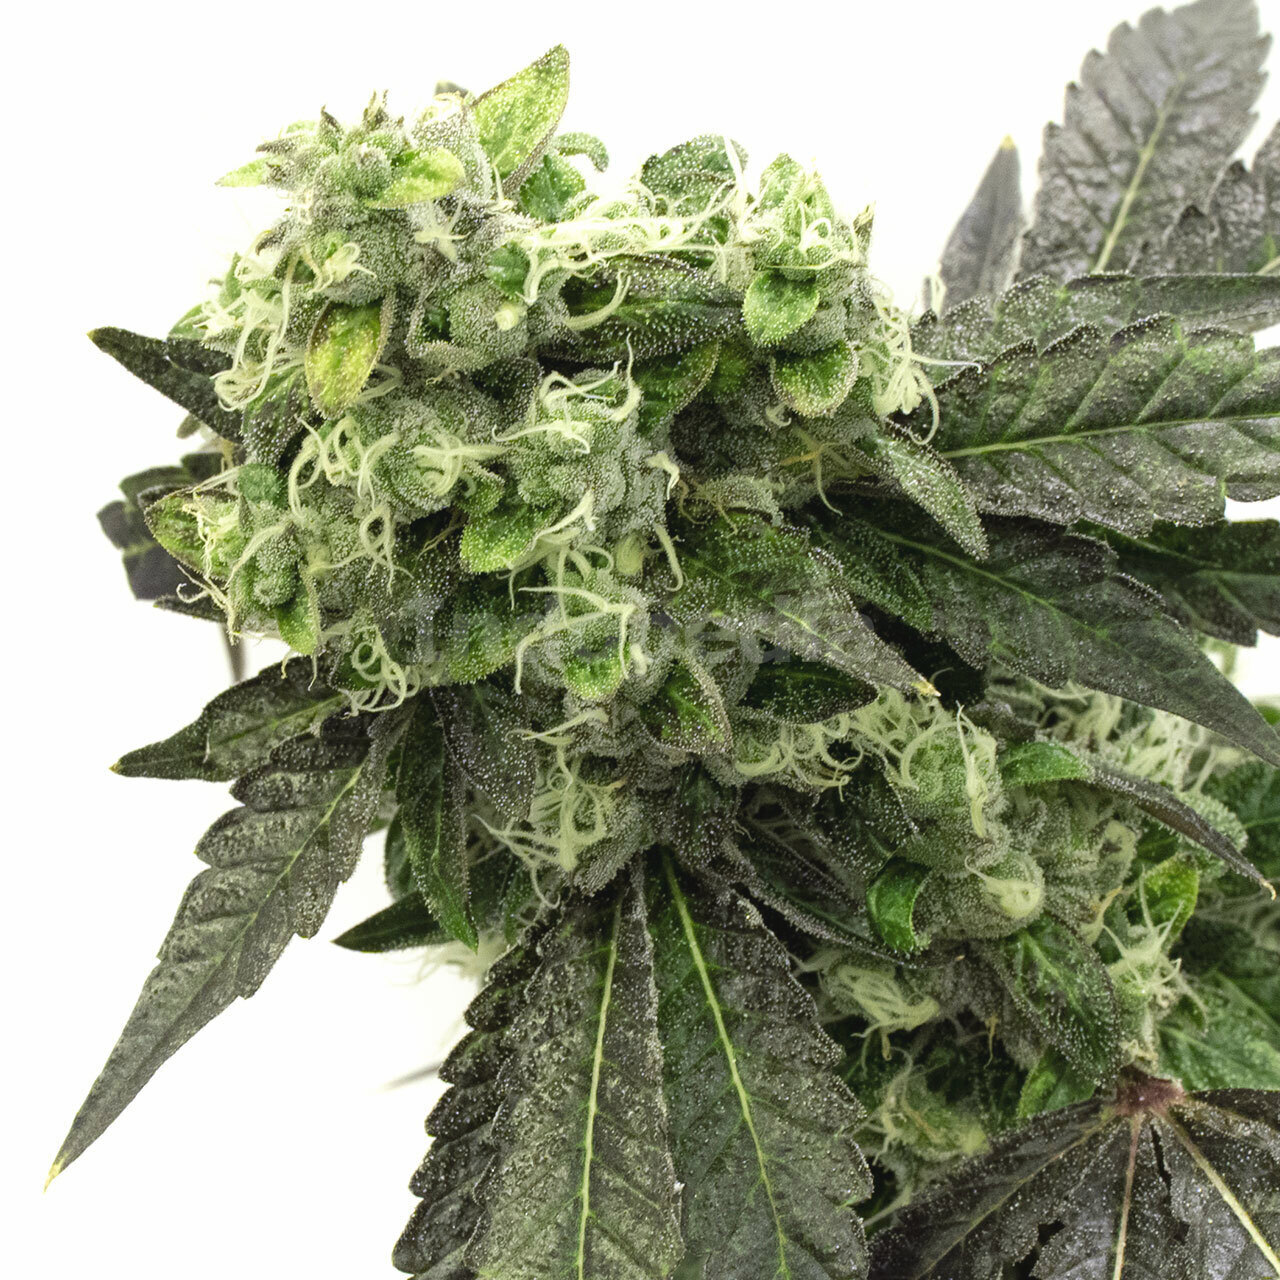 Grape Ape Feminized Cannabis Seeds